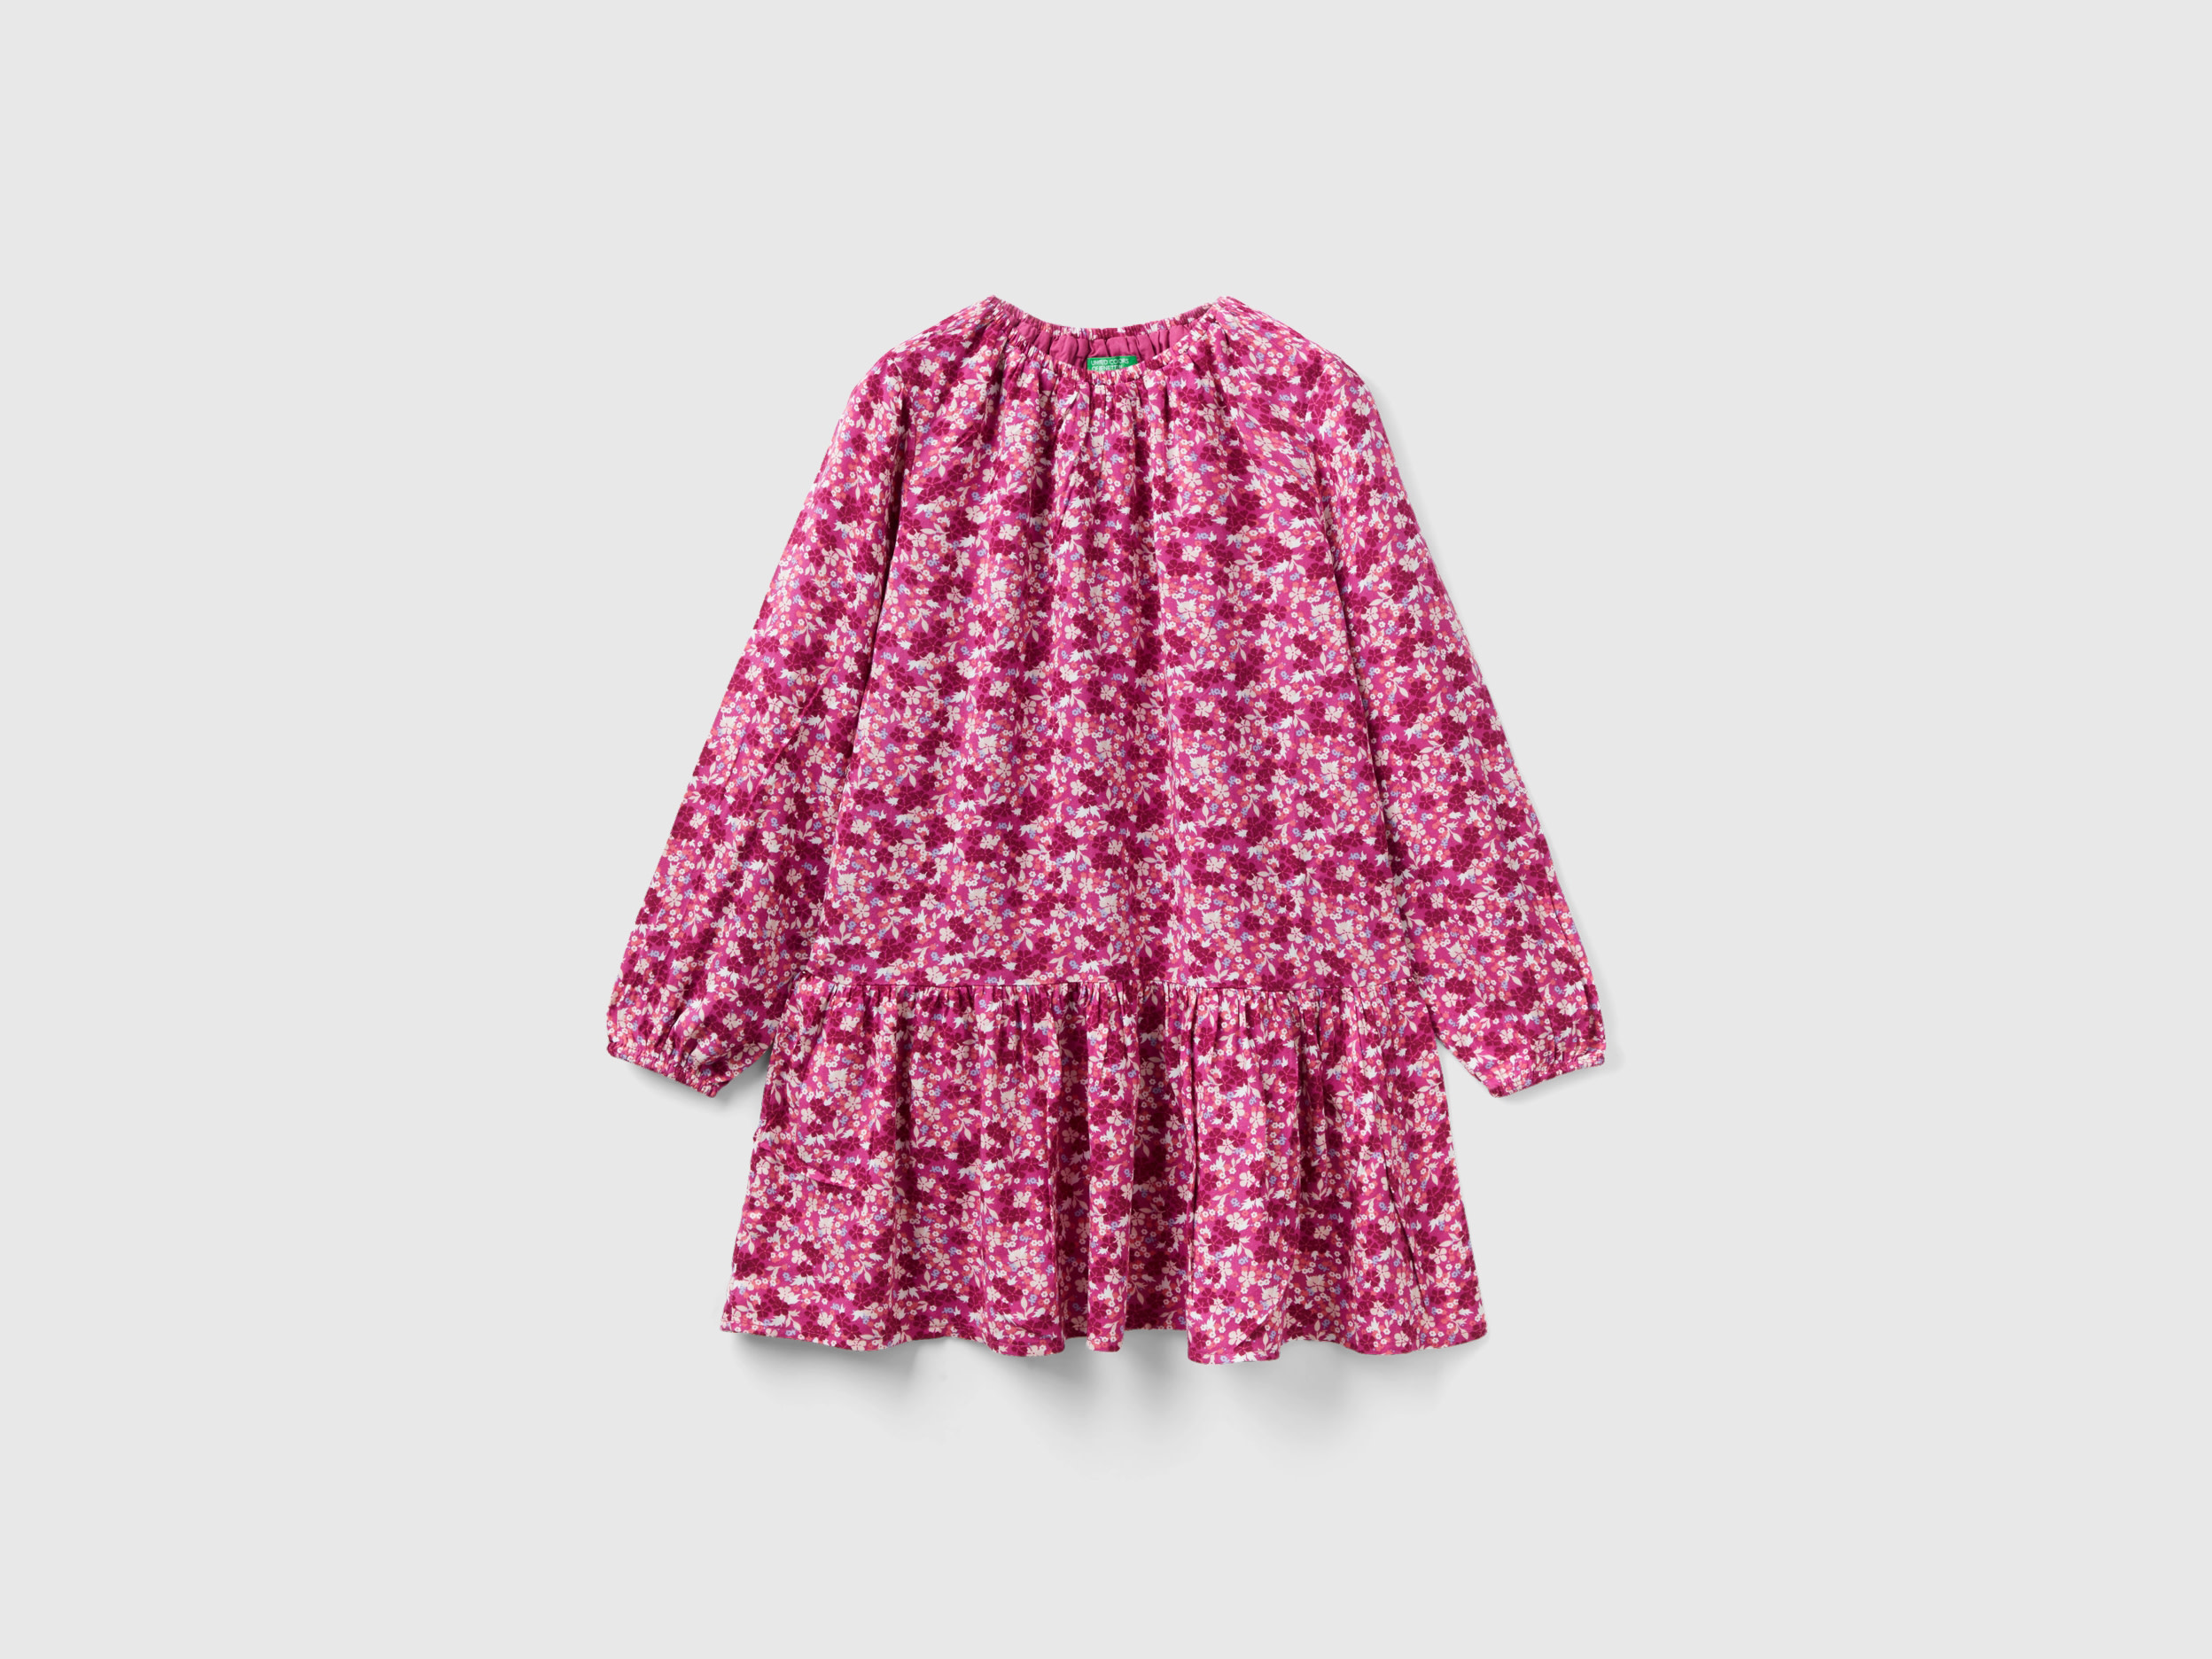 Benetton, Flowy Floral Dress, size XL, Multi-color, Kids